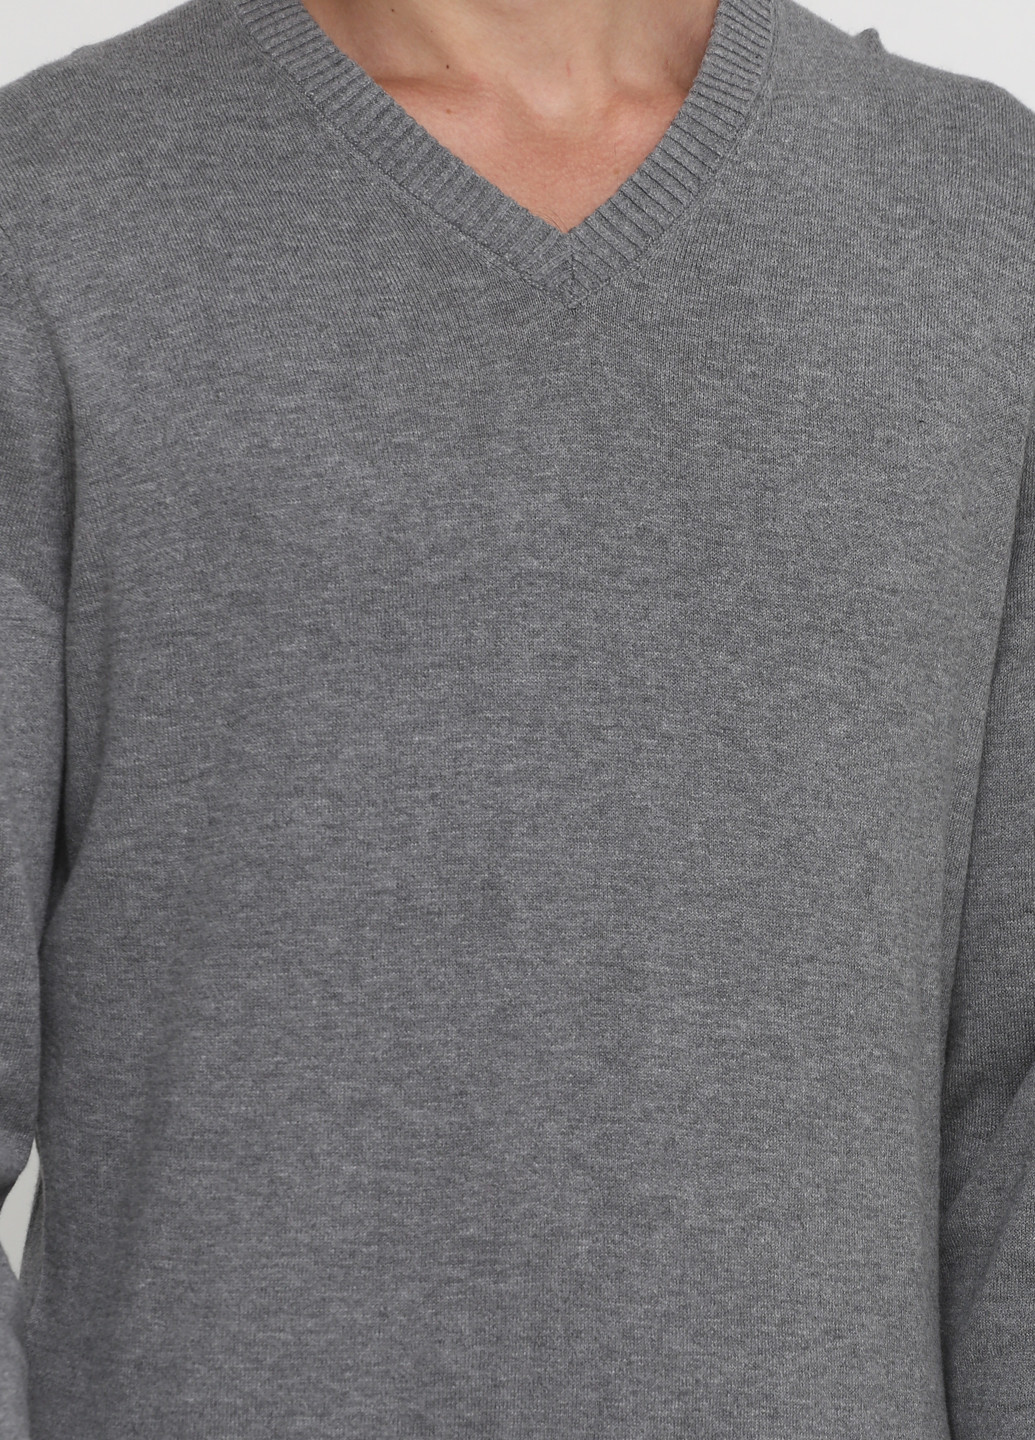 Серый демисезонный пуловер пуловер CHD